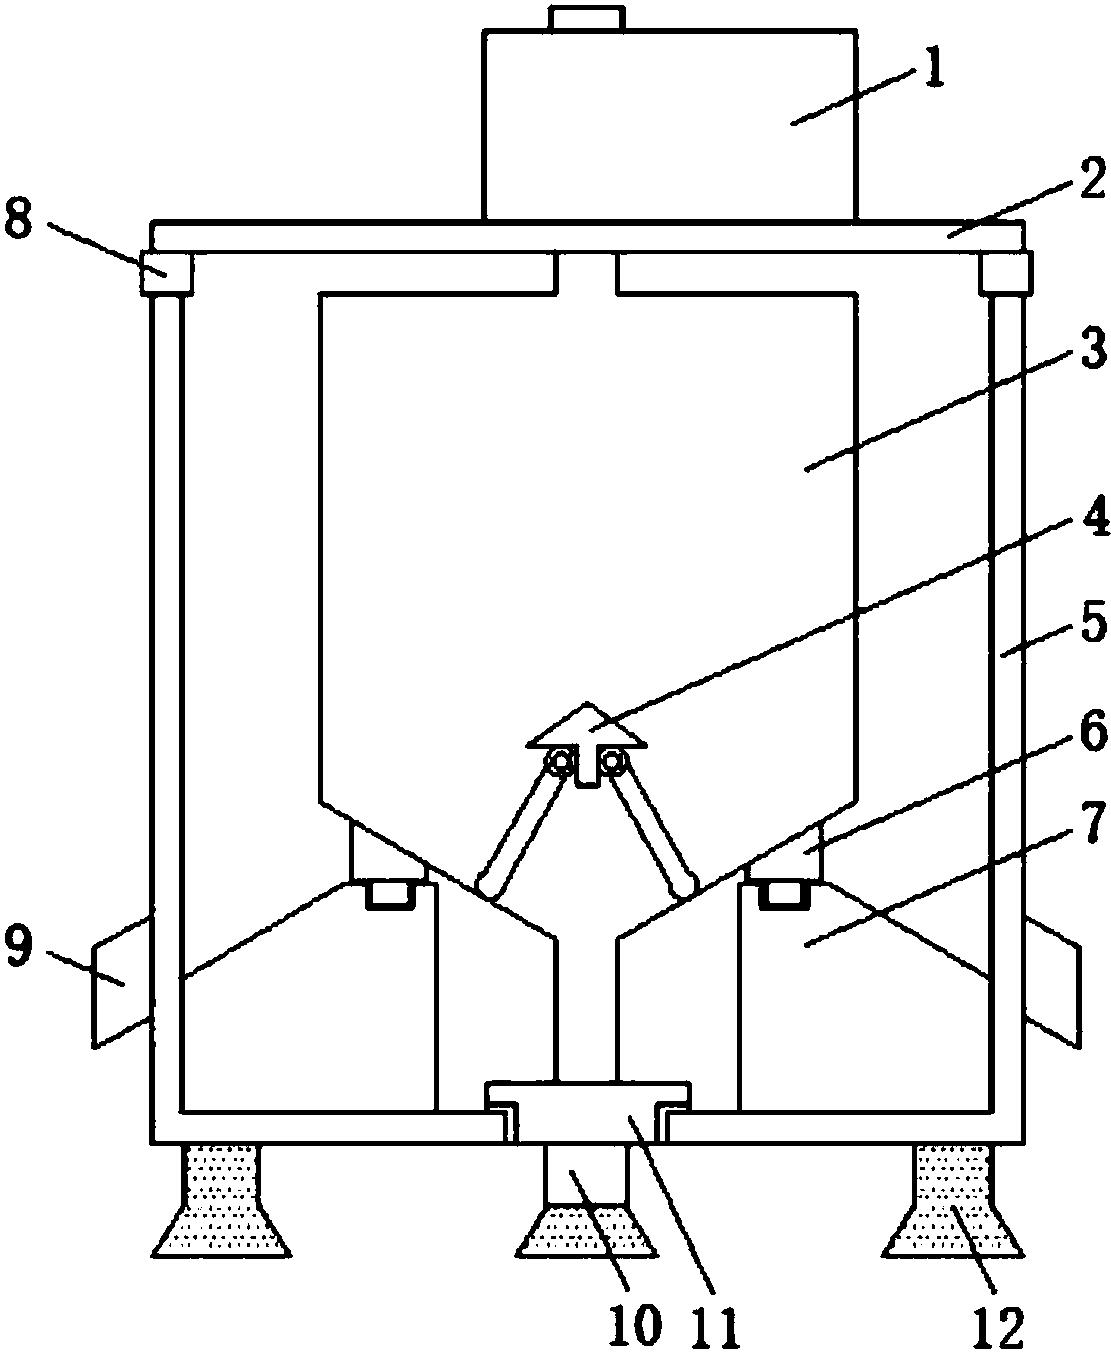 种制药用三足式过滤离心机,包括主箱体,所述主箱体的顶端安装有支撑环